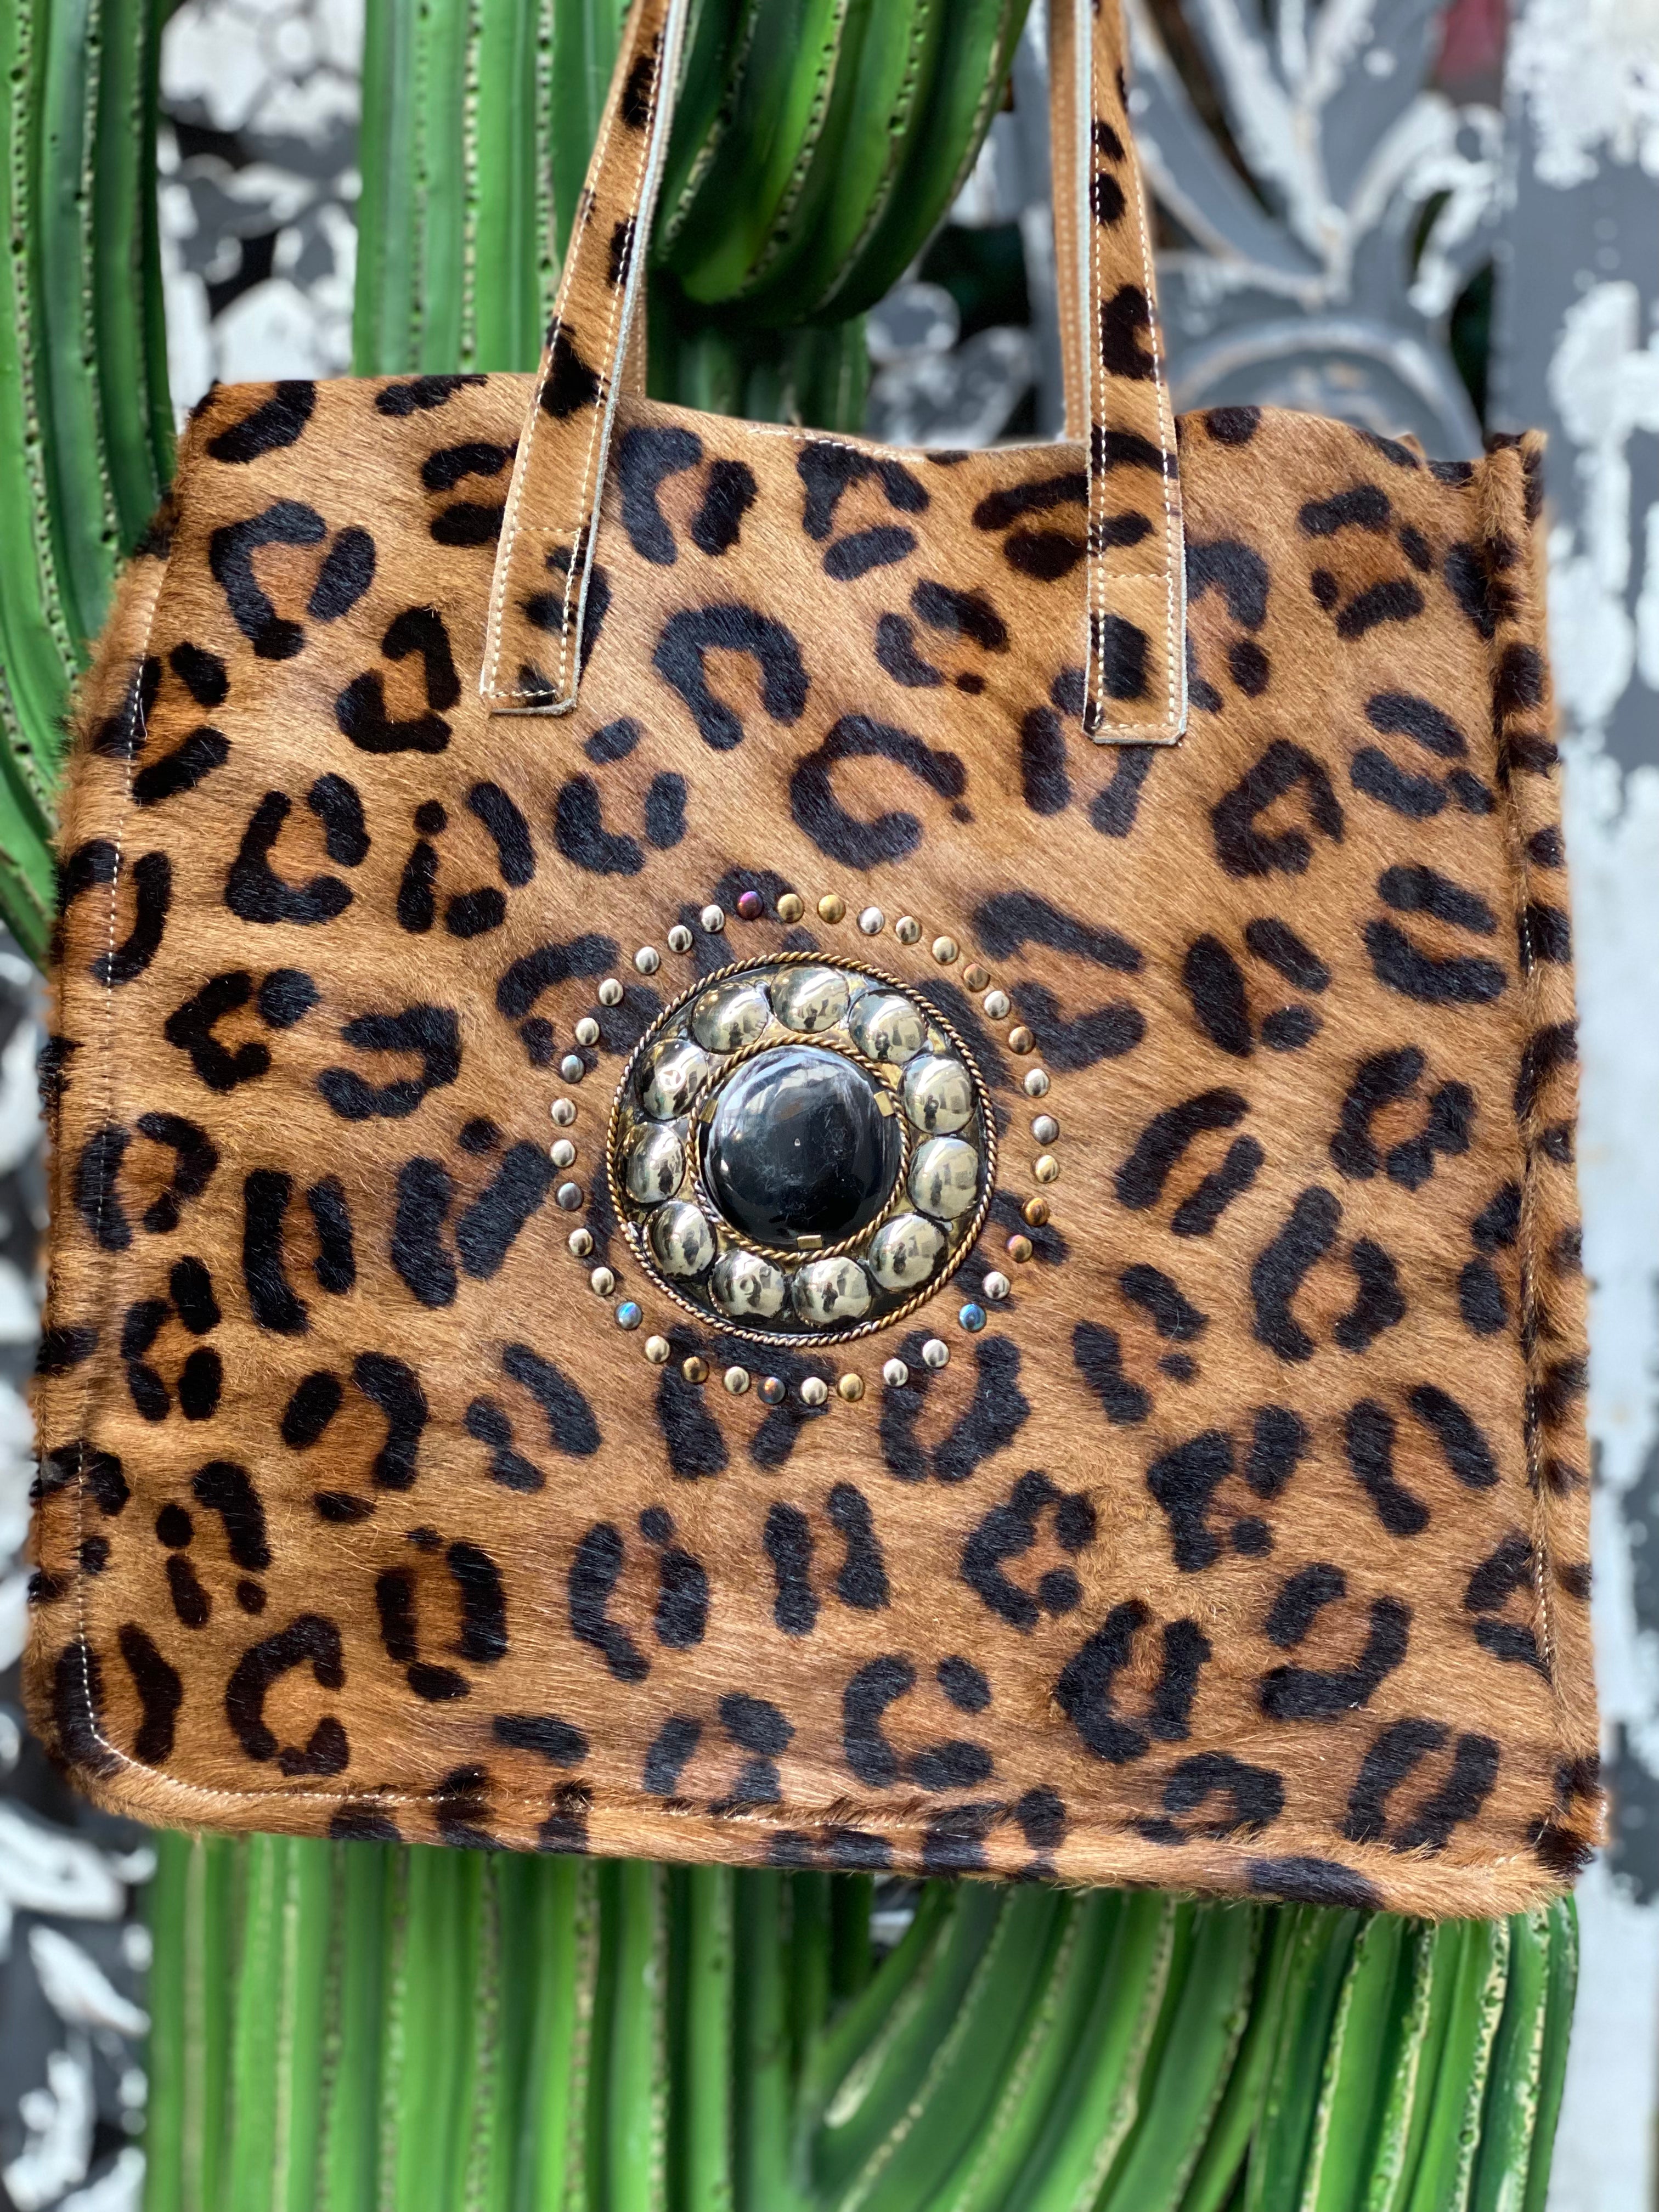 Flower Market Leopard Tote Bag